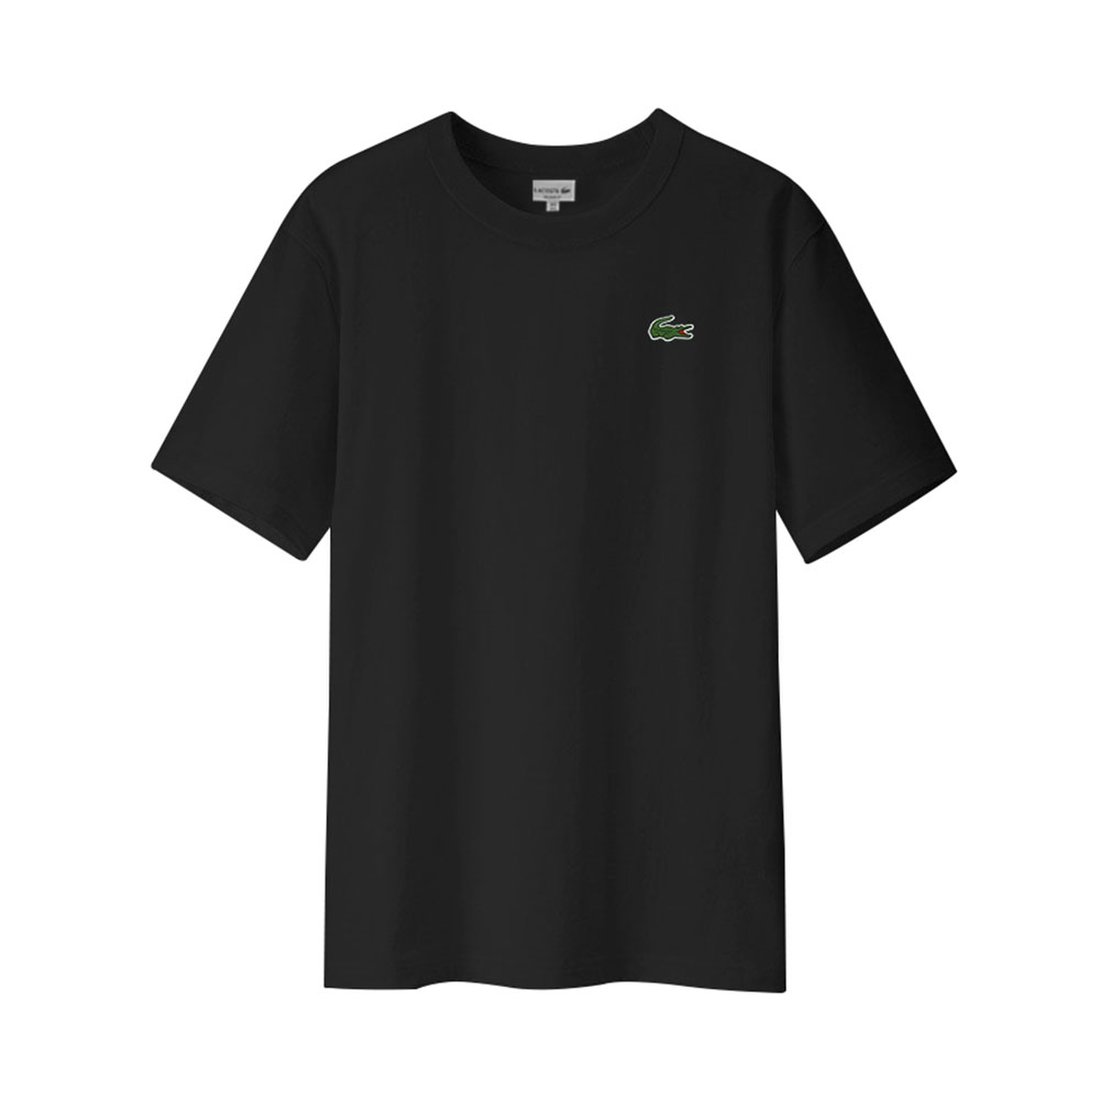 라코스테 남성 남자 크루넥 라운드넥 반팔 티셔츠 Th6709 031, 신세계적 쇼핑포털 Ssg.Com